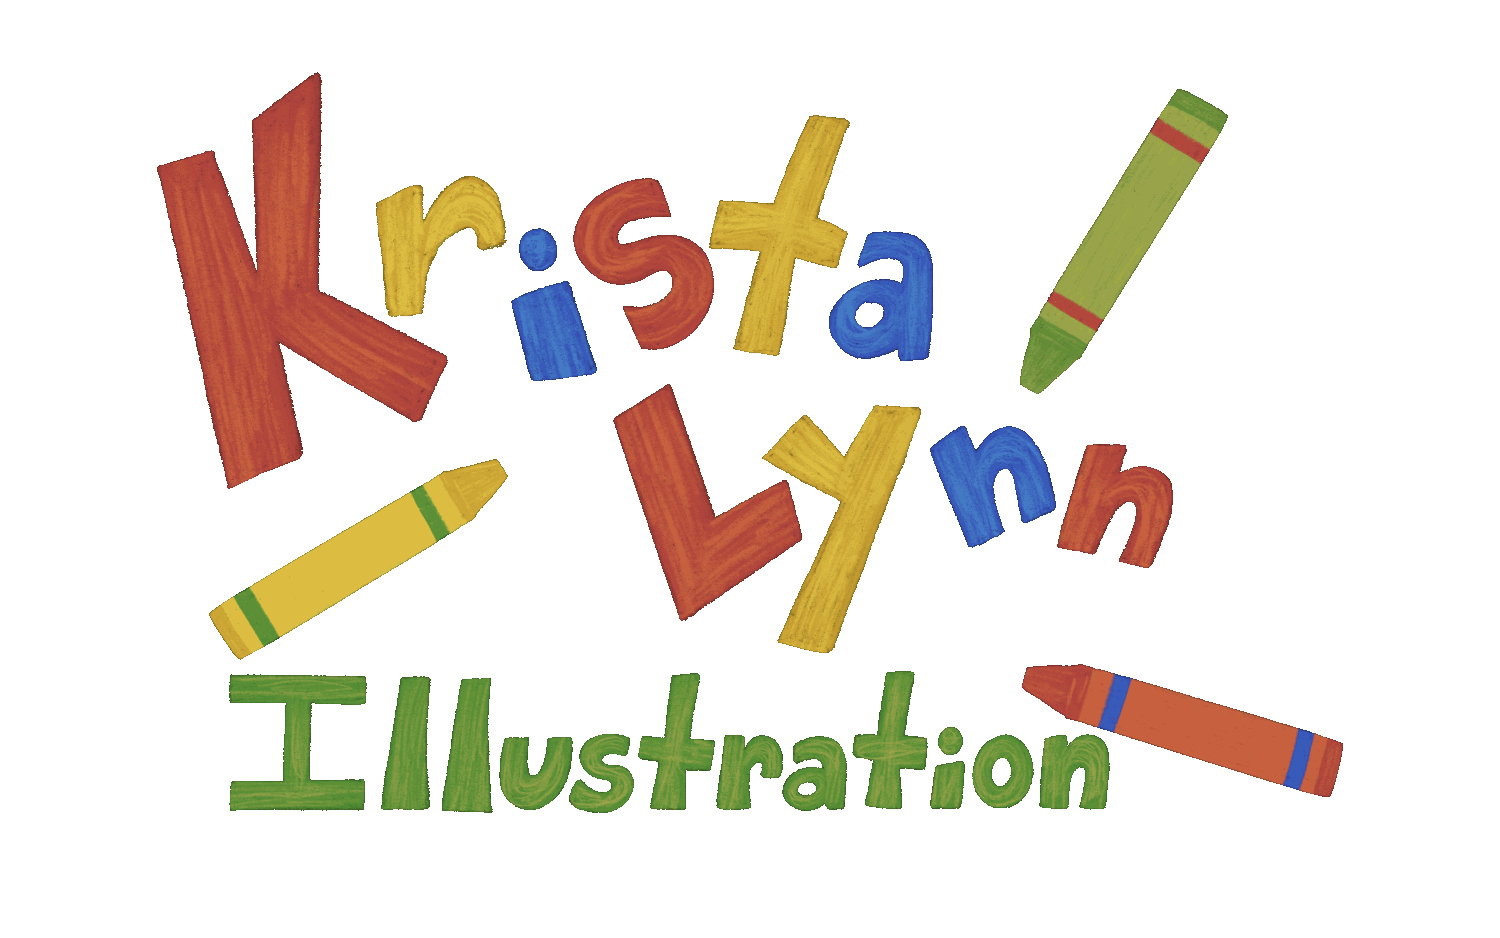 Krista Lynn Illstration